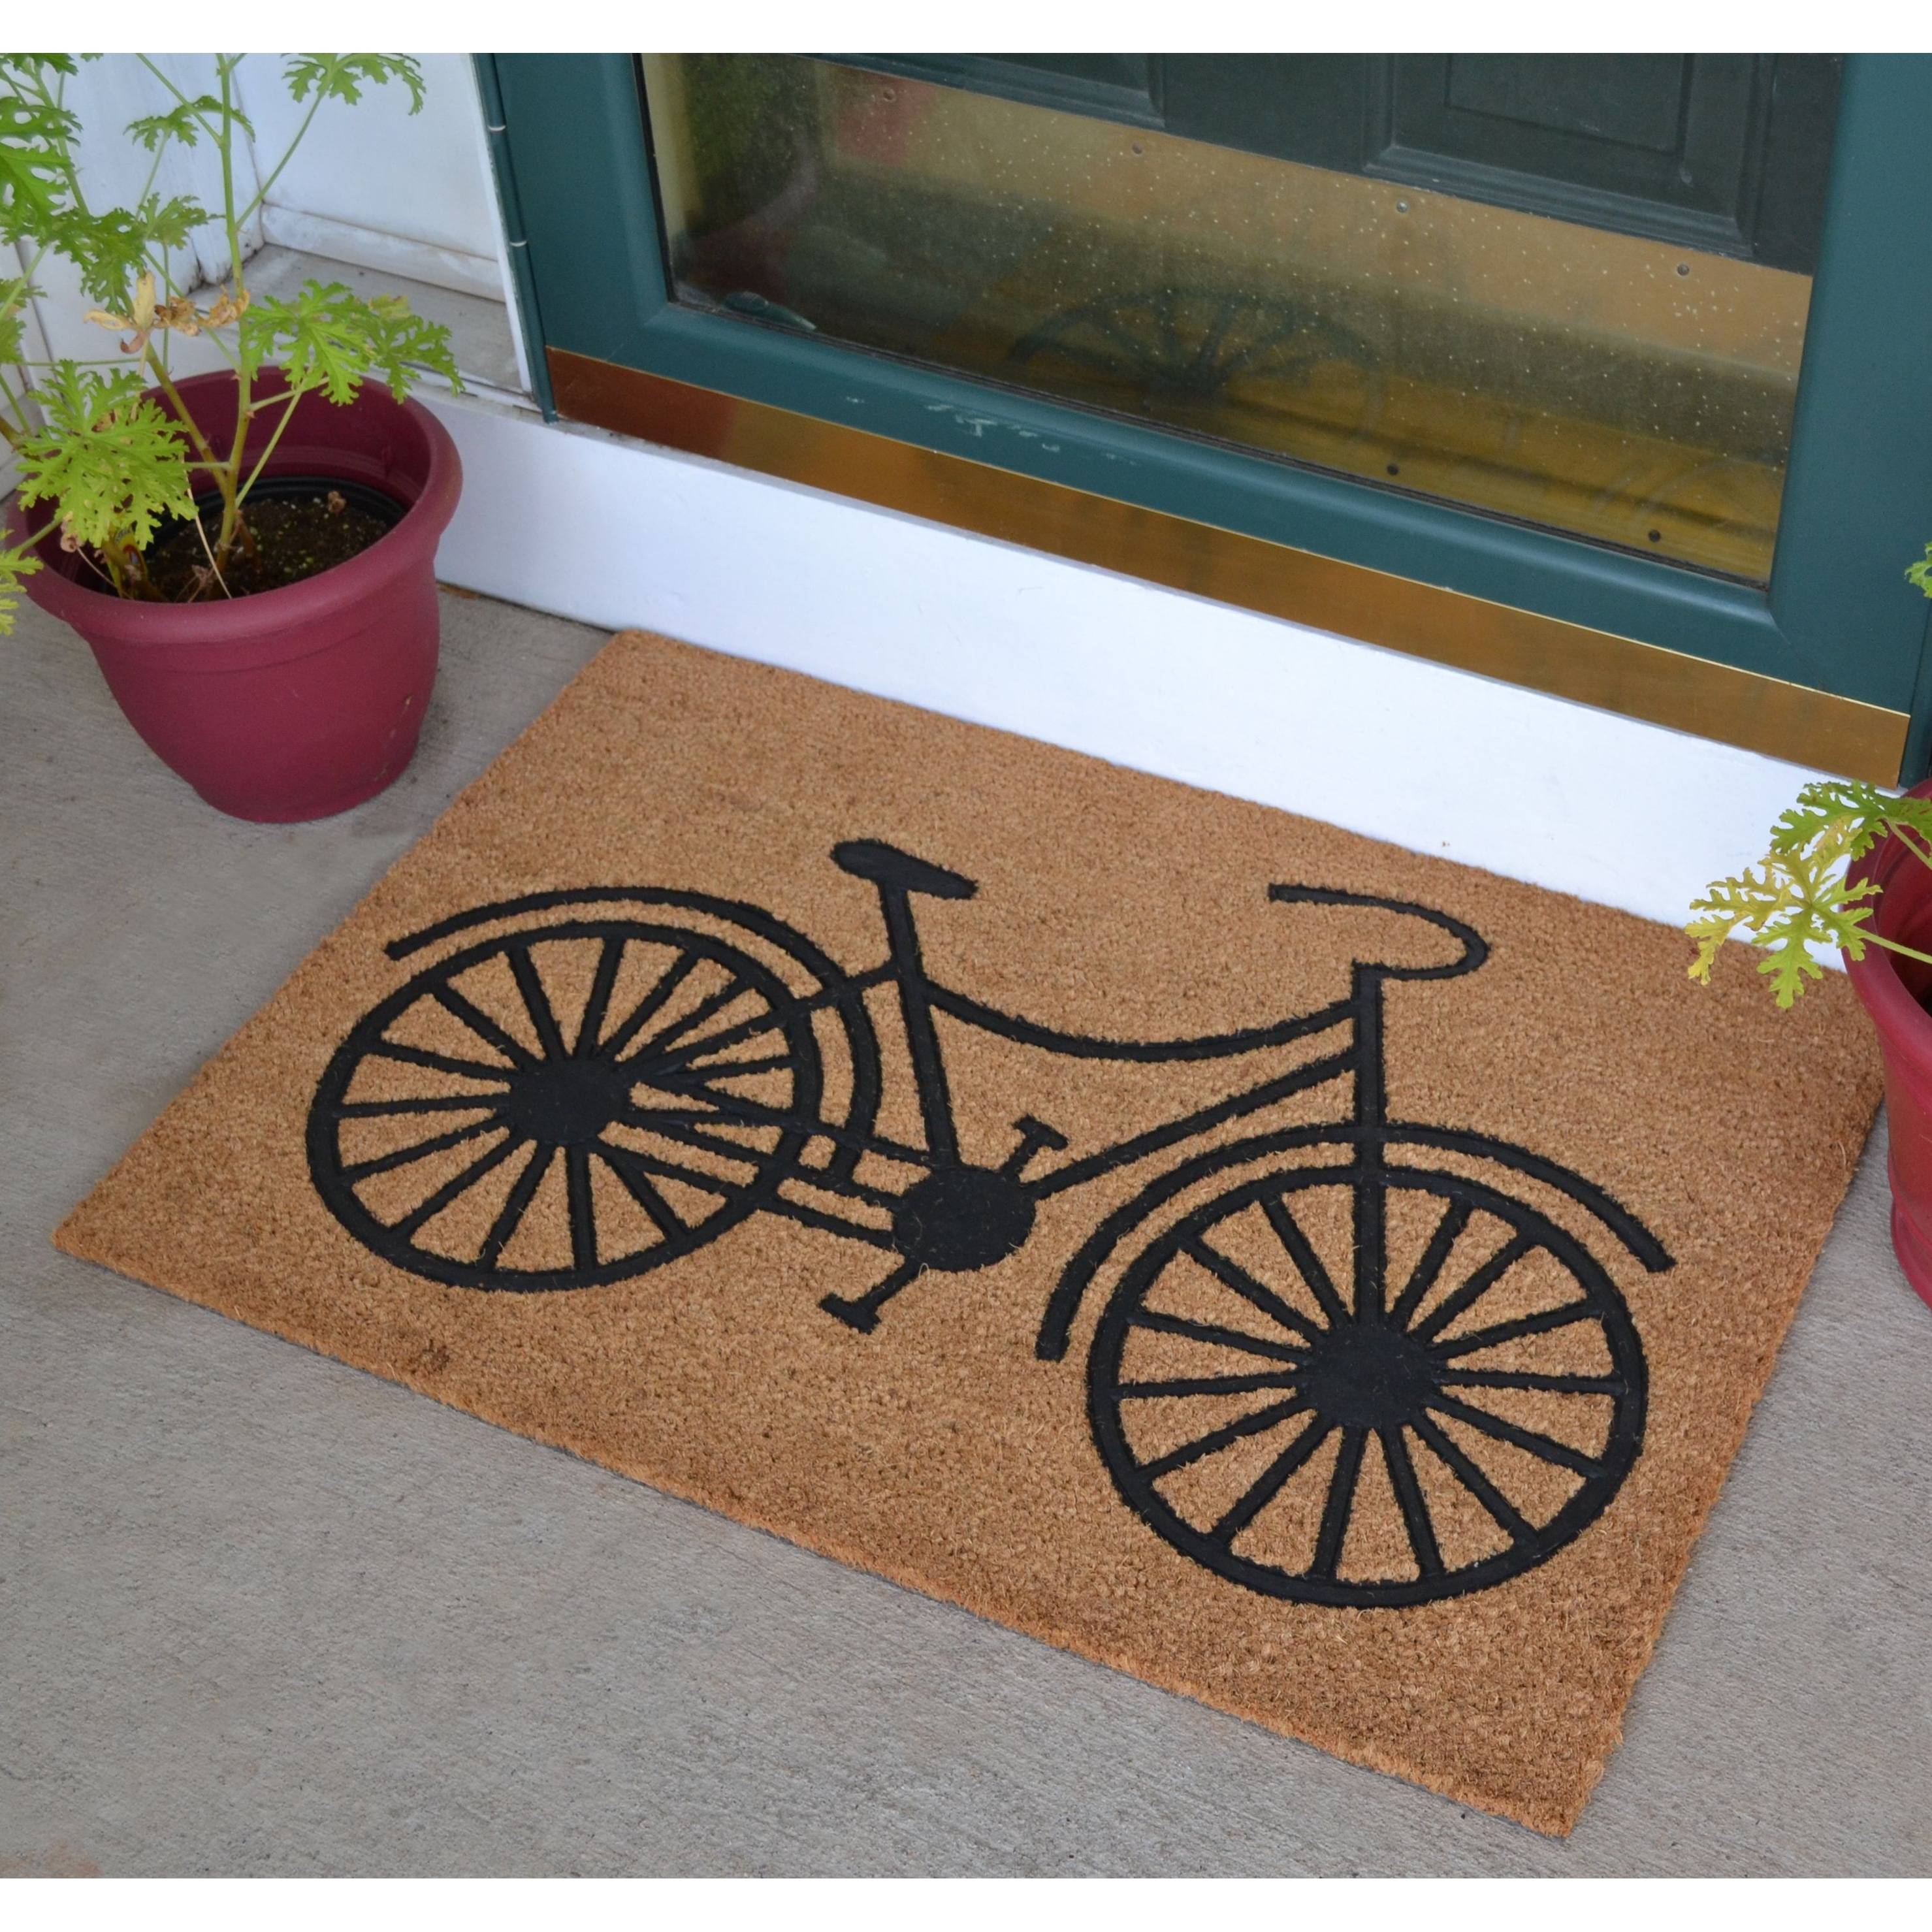 Embossed Door Mat Natural Coco Coir Non-slip Doormat for Home